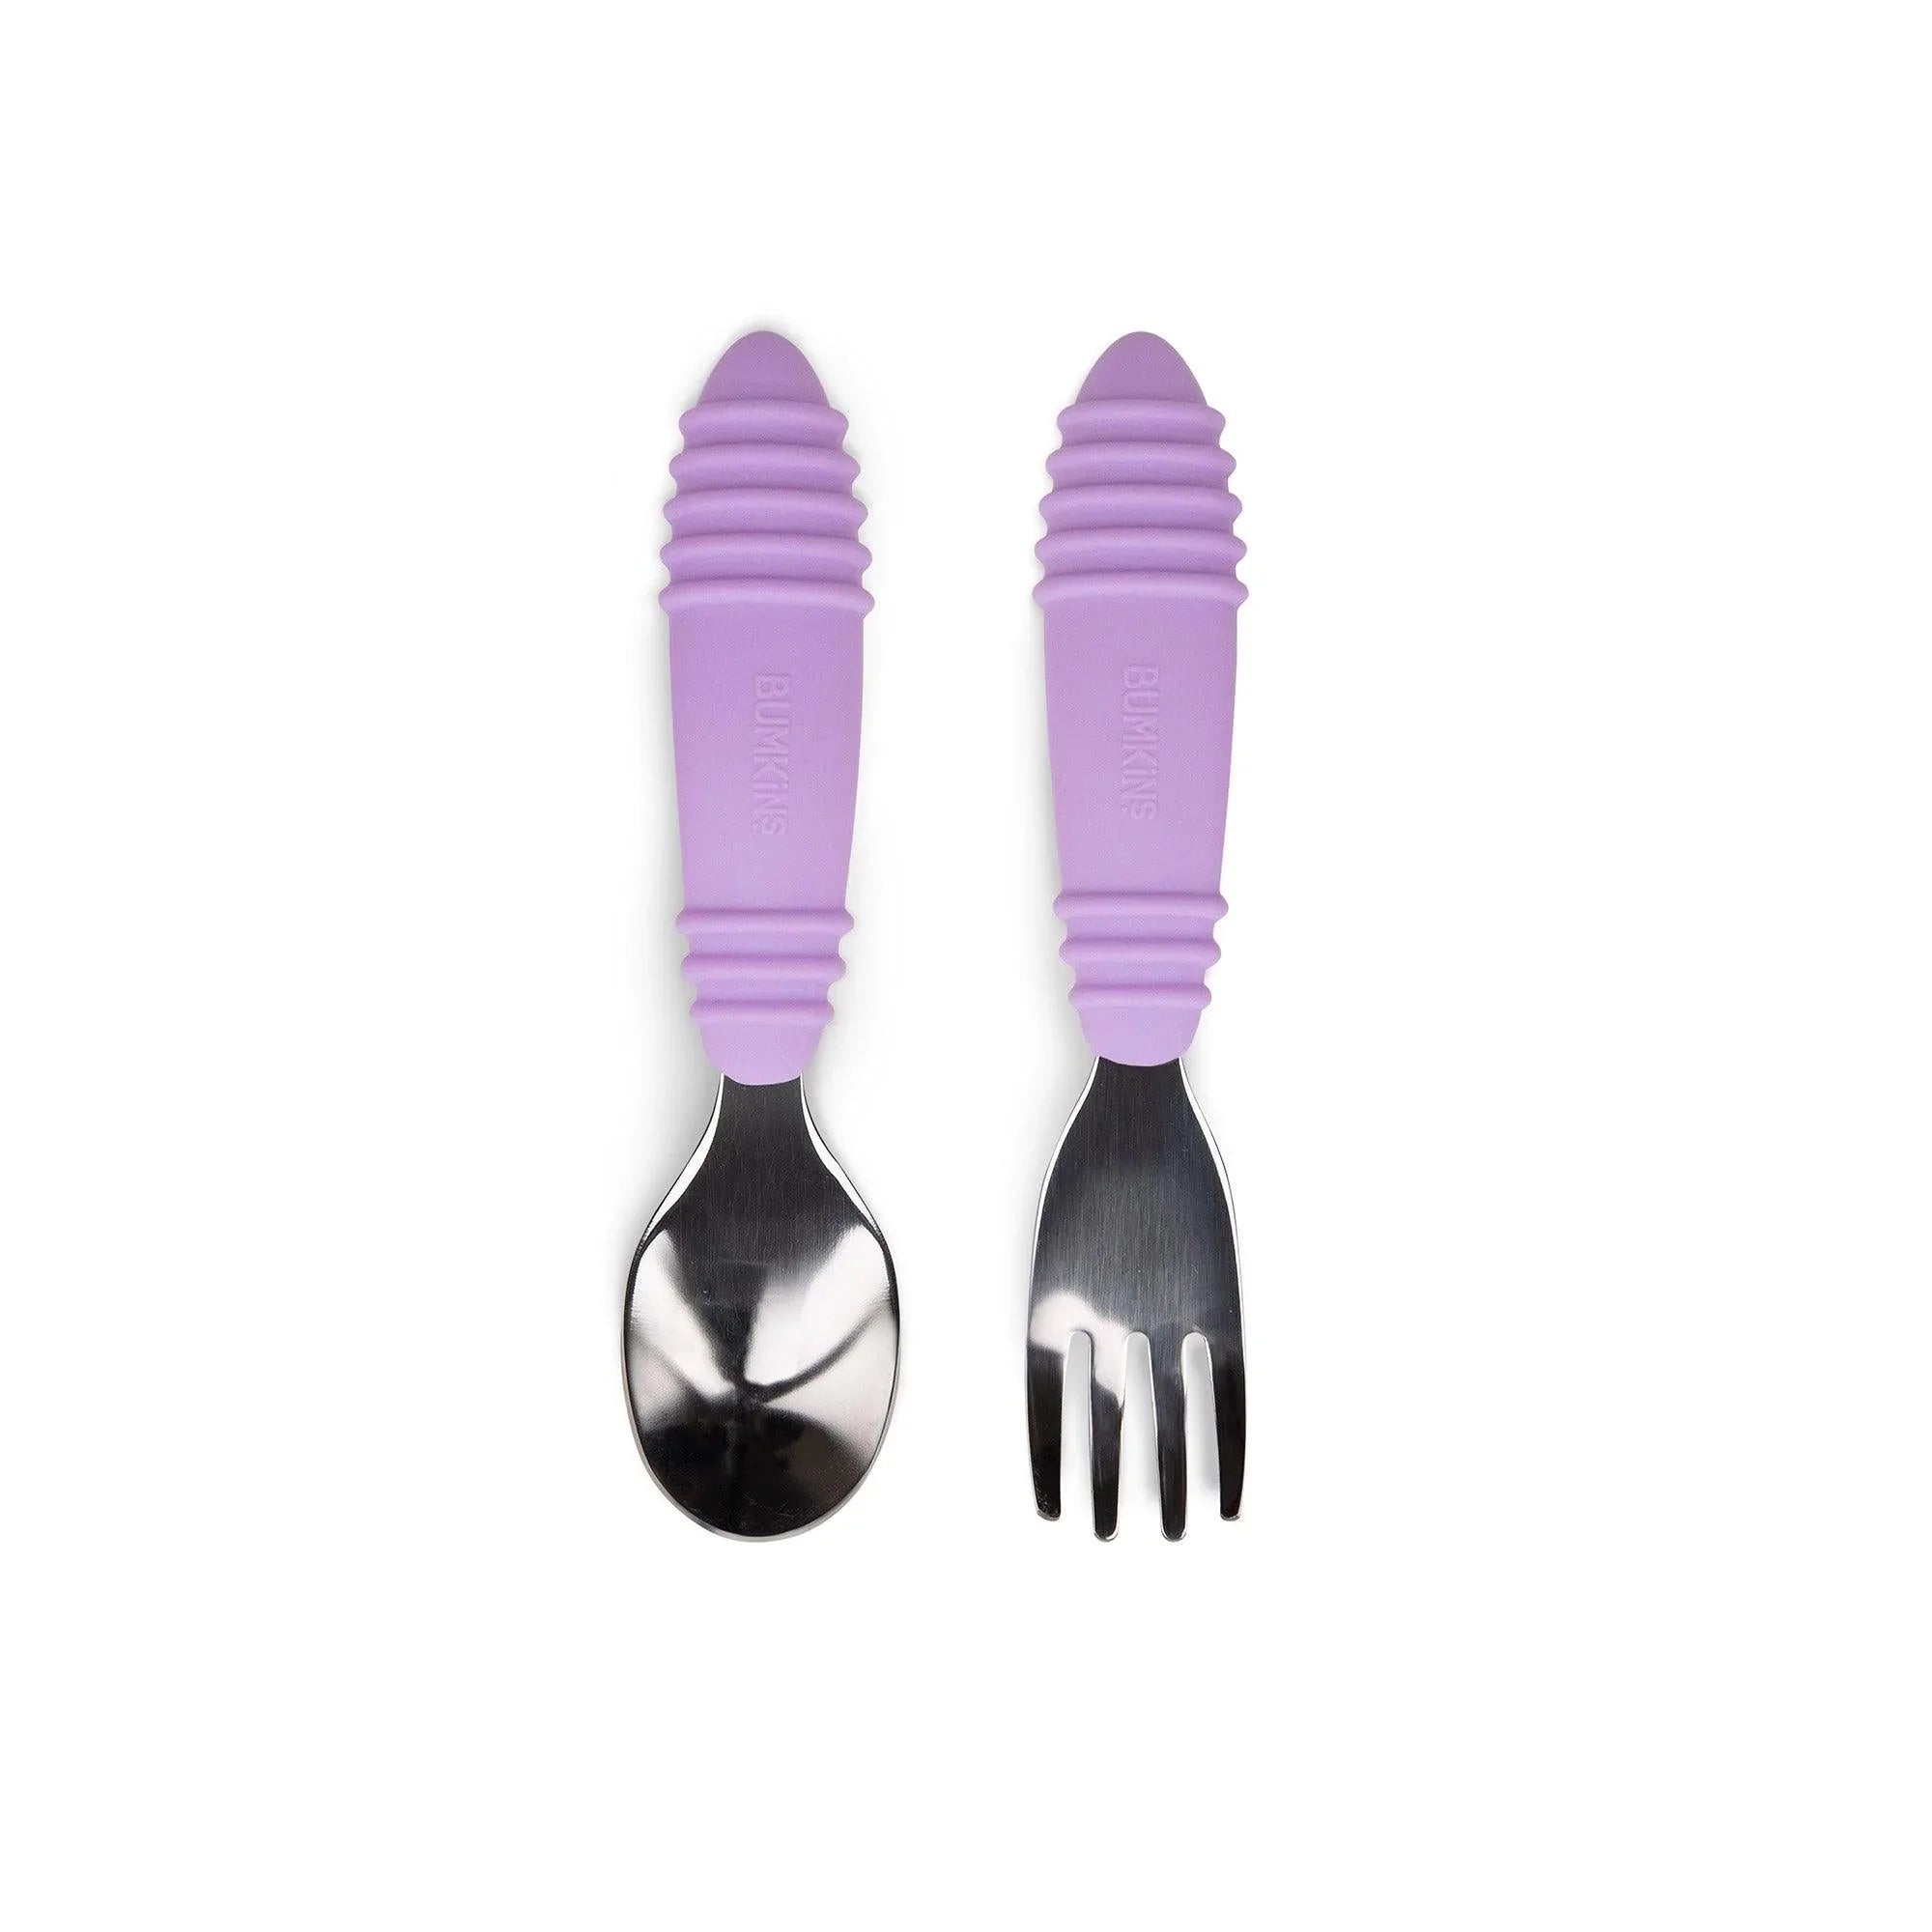 Fun Purple Children's Utensils Spoon + Fork Set